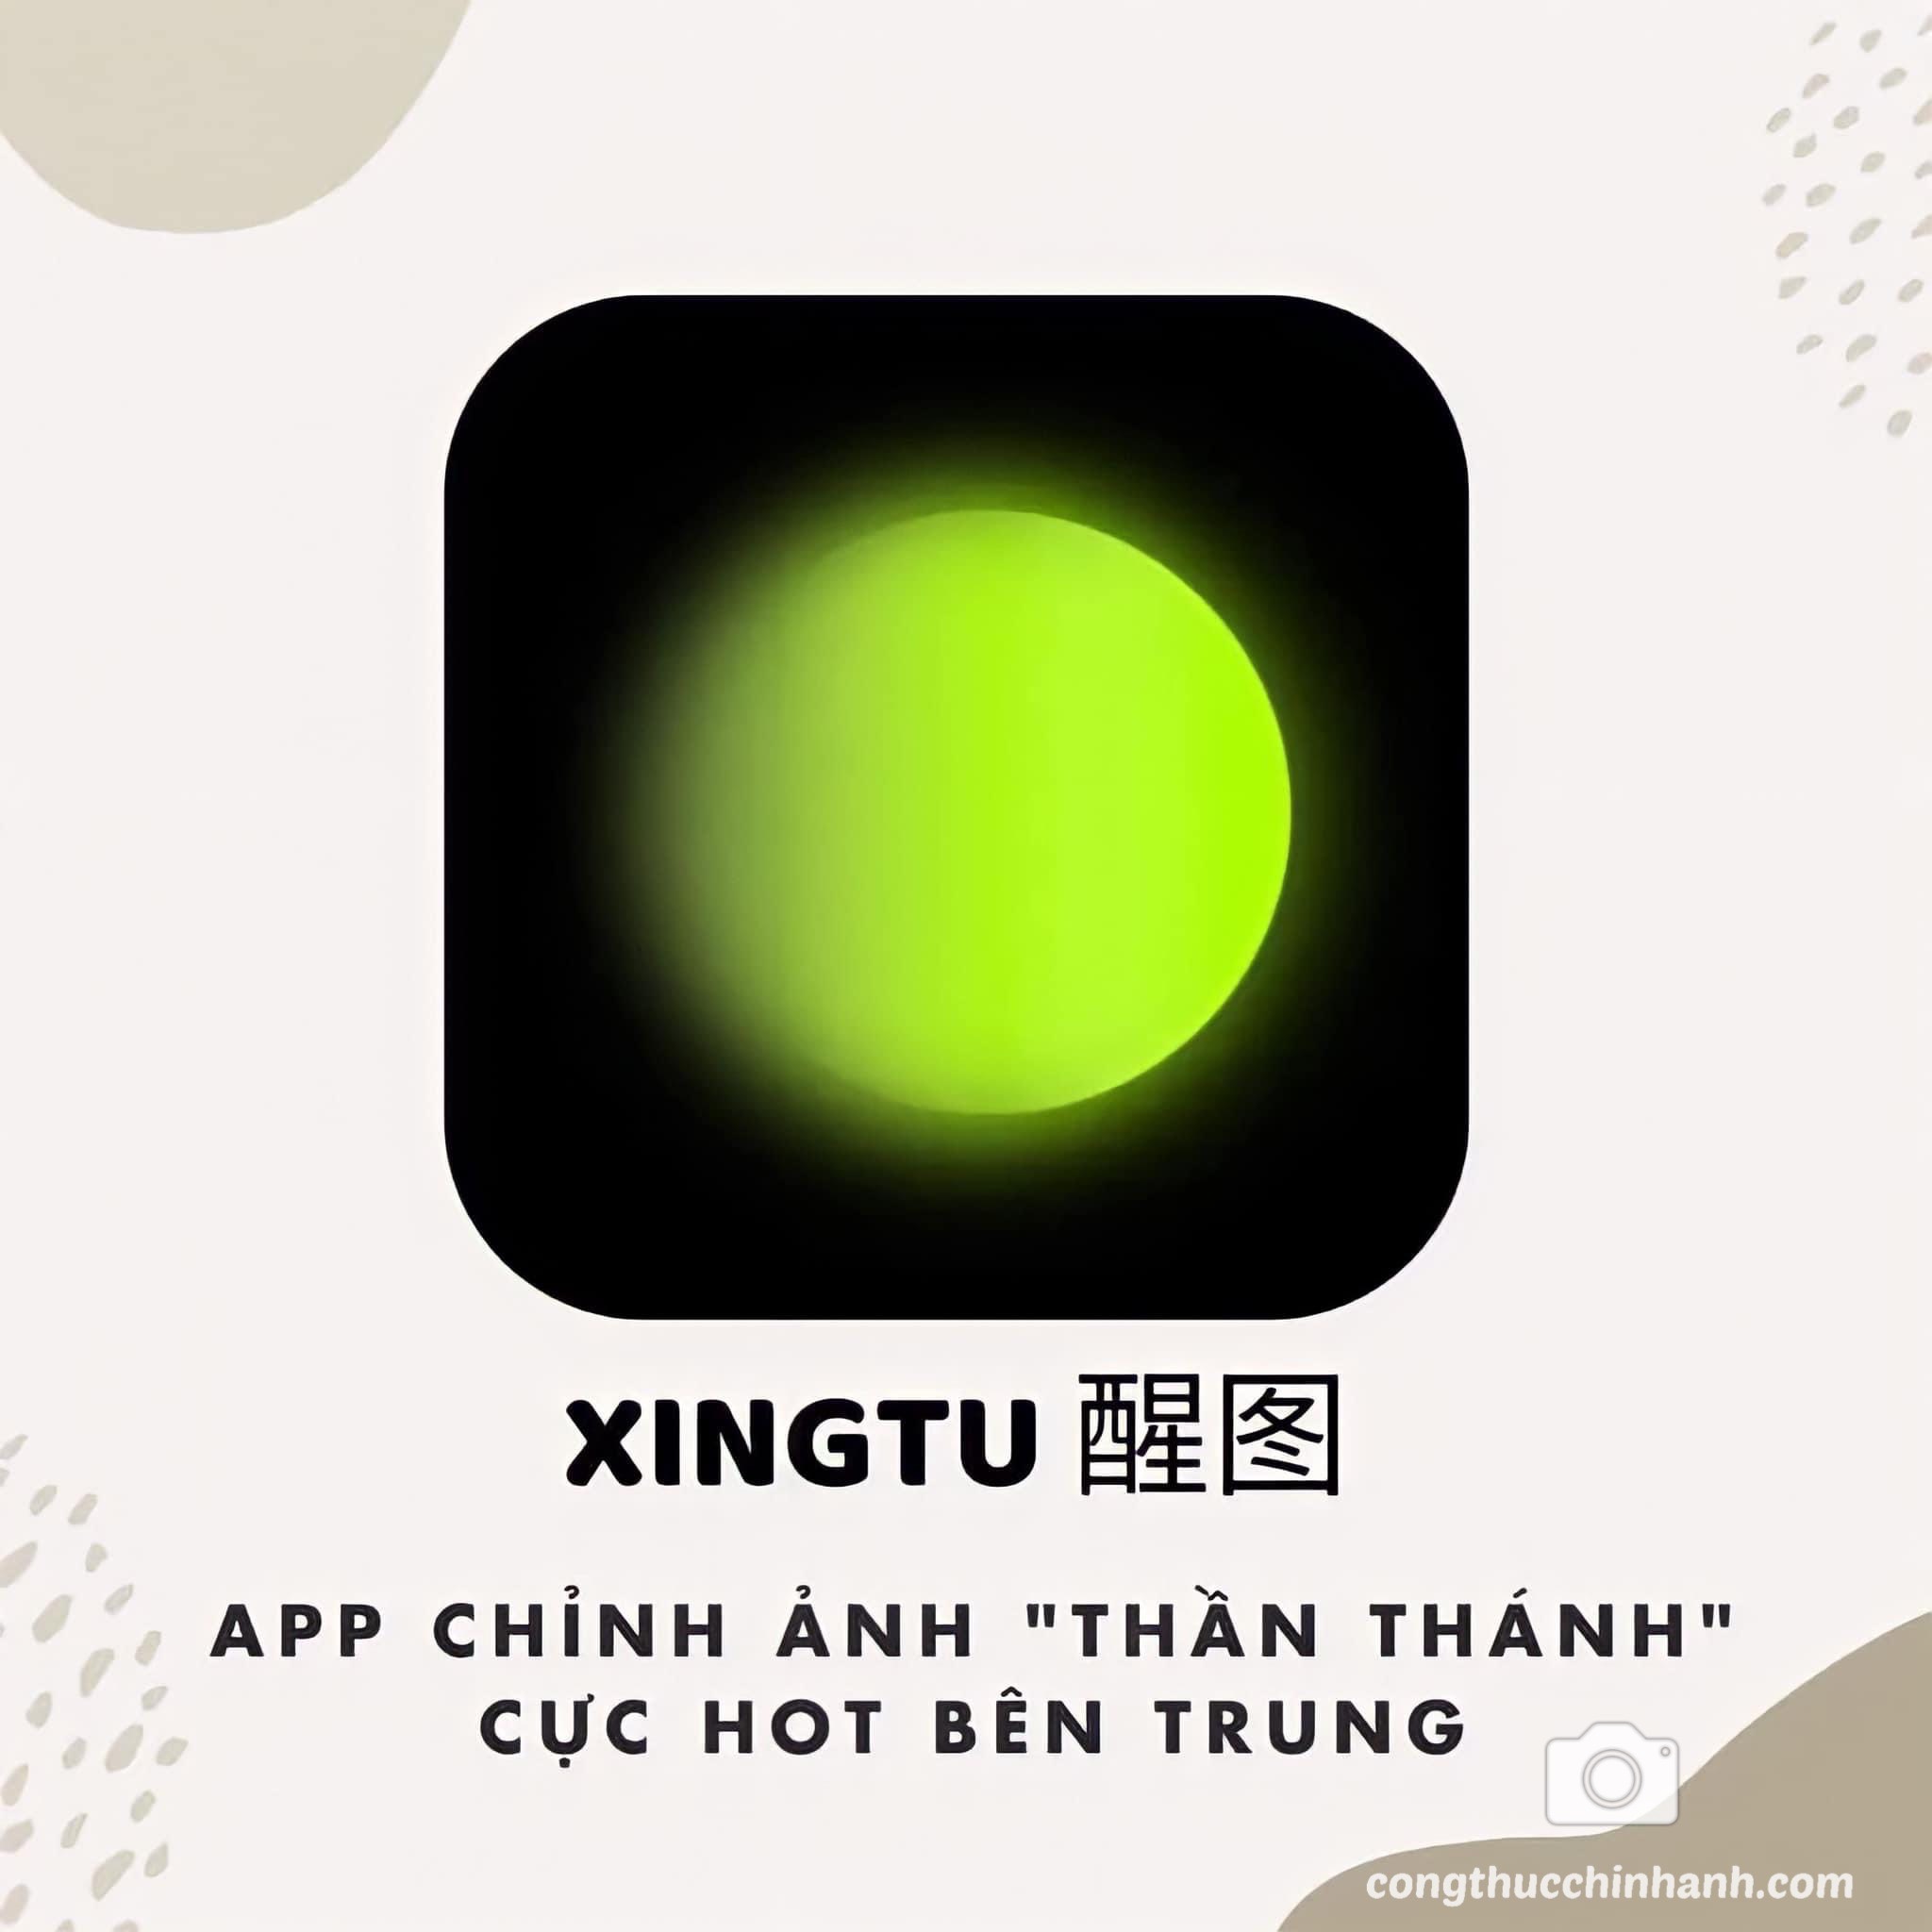 You are currently viewing Mua app Xingtu Vip sử dụng vĩnh viễn – giá rẻ hiện nay